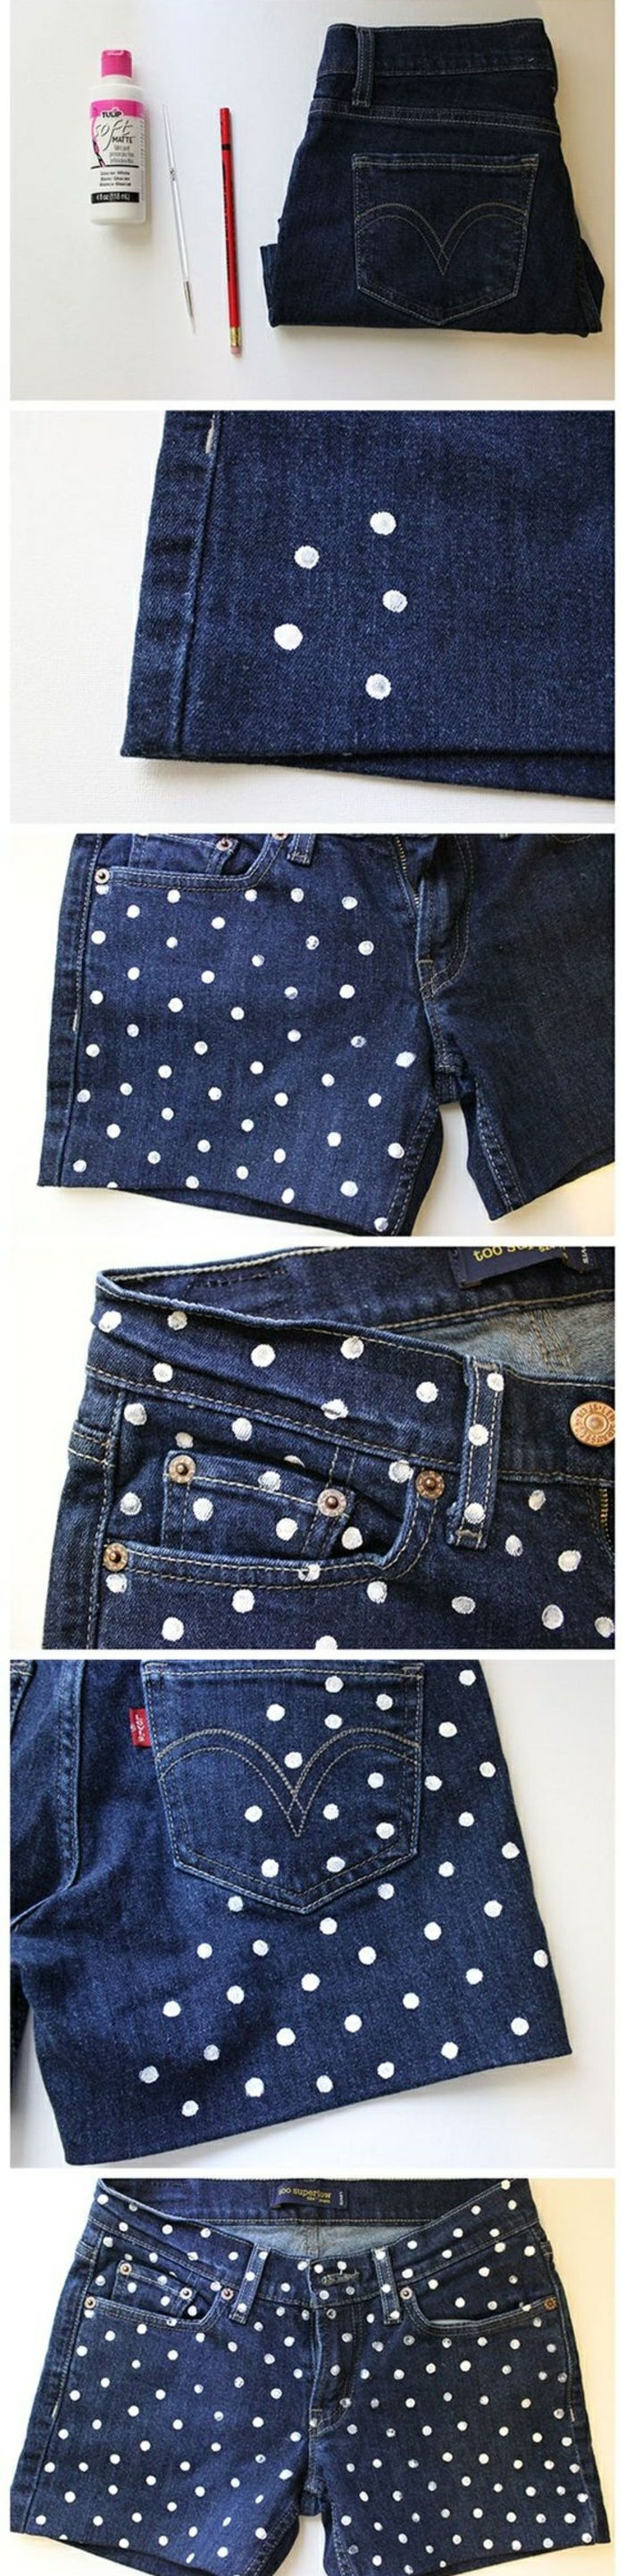 upcycling idéer - mörkblå jeans med vita prickar